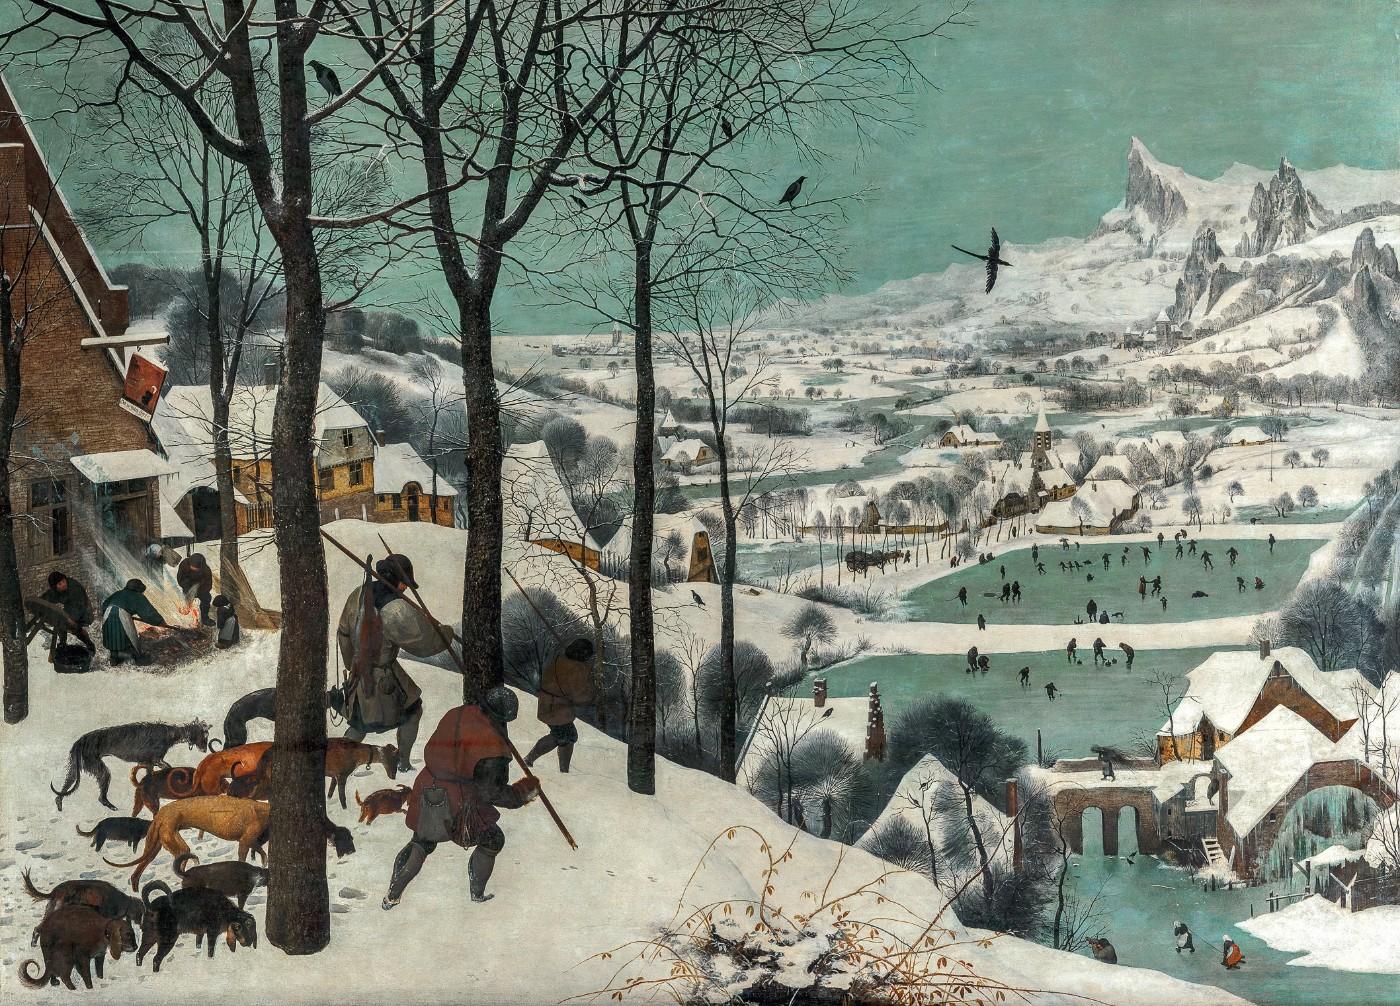 Pieter Bruegel the Elder, Hunters in the Snow, 1565